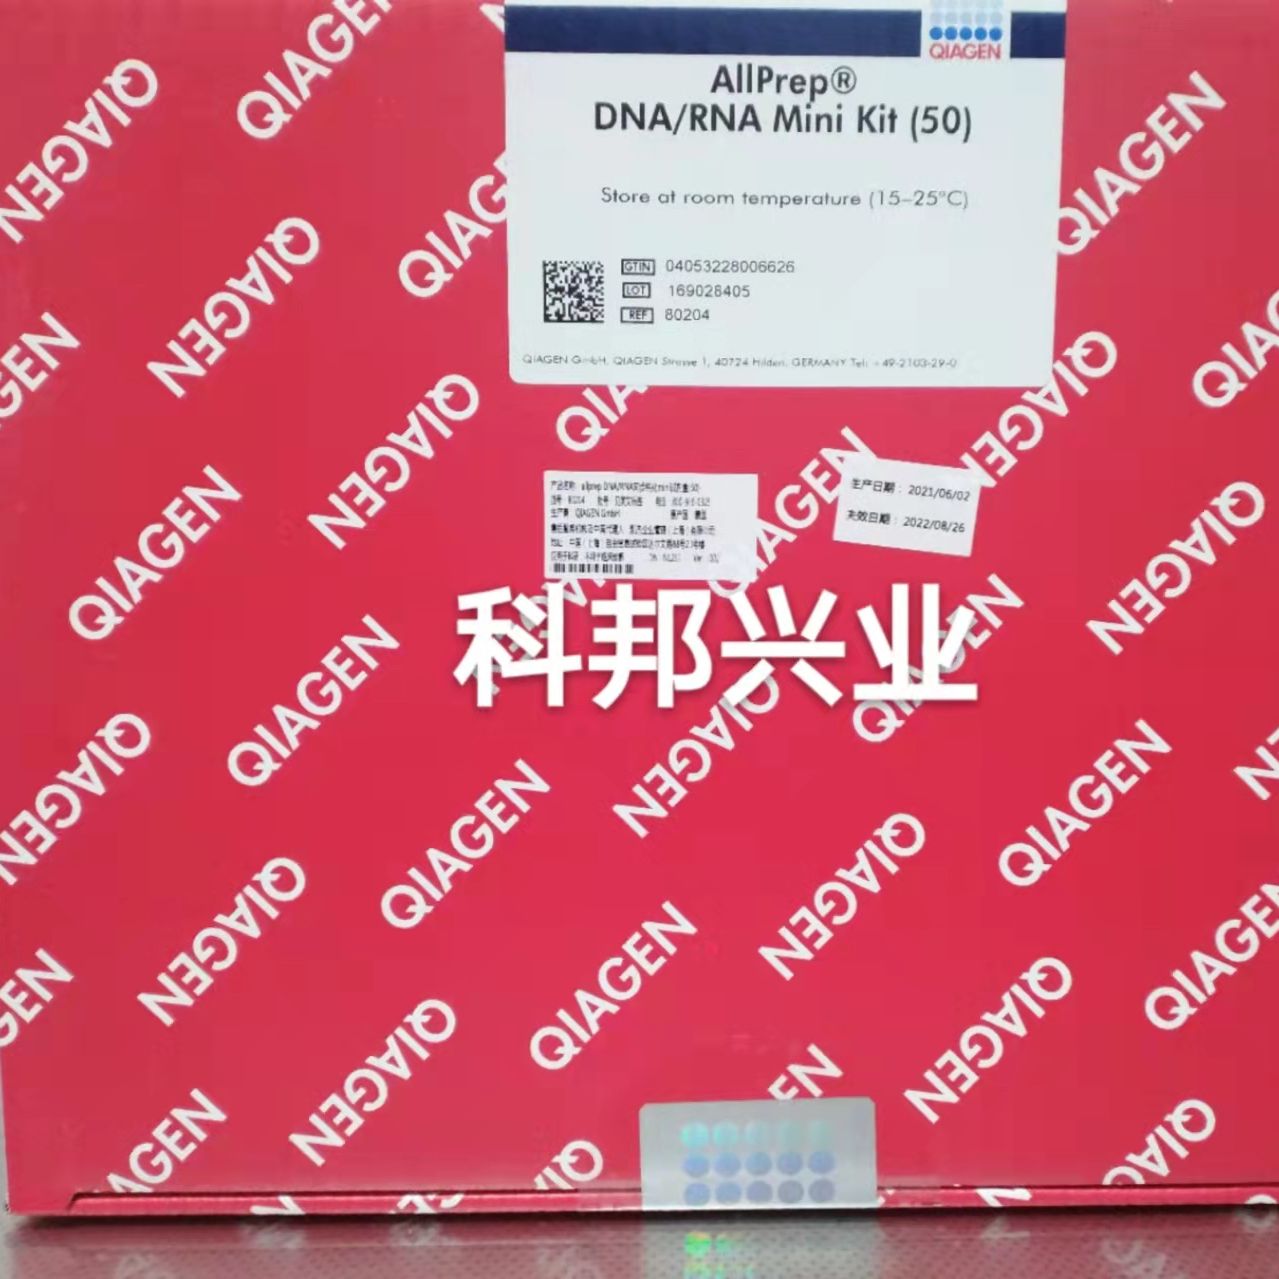 凯杰优秀代理商 QIAGEN 80204 AllPrep DNA/RNA Mini Kit